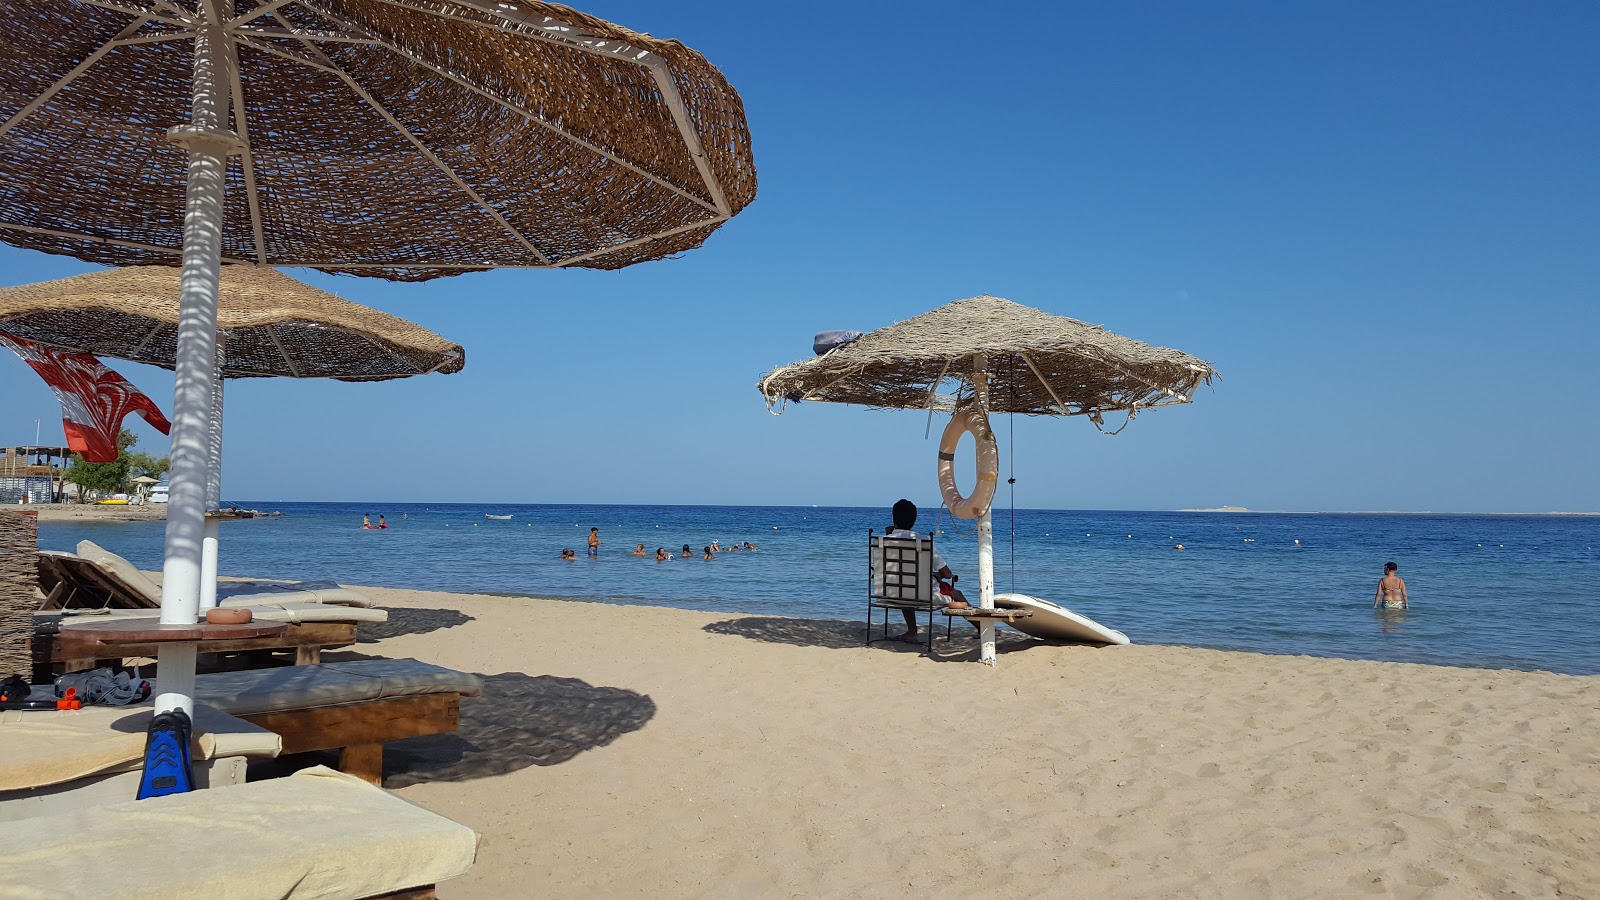 Safaga beach'in fotoğrafı parlak kum yüzey ile